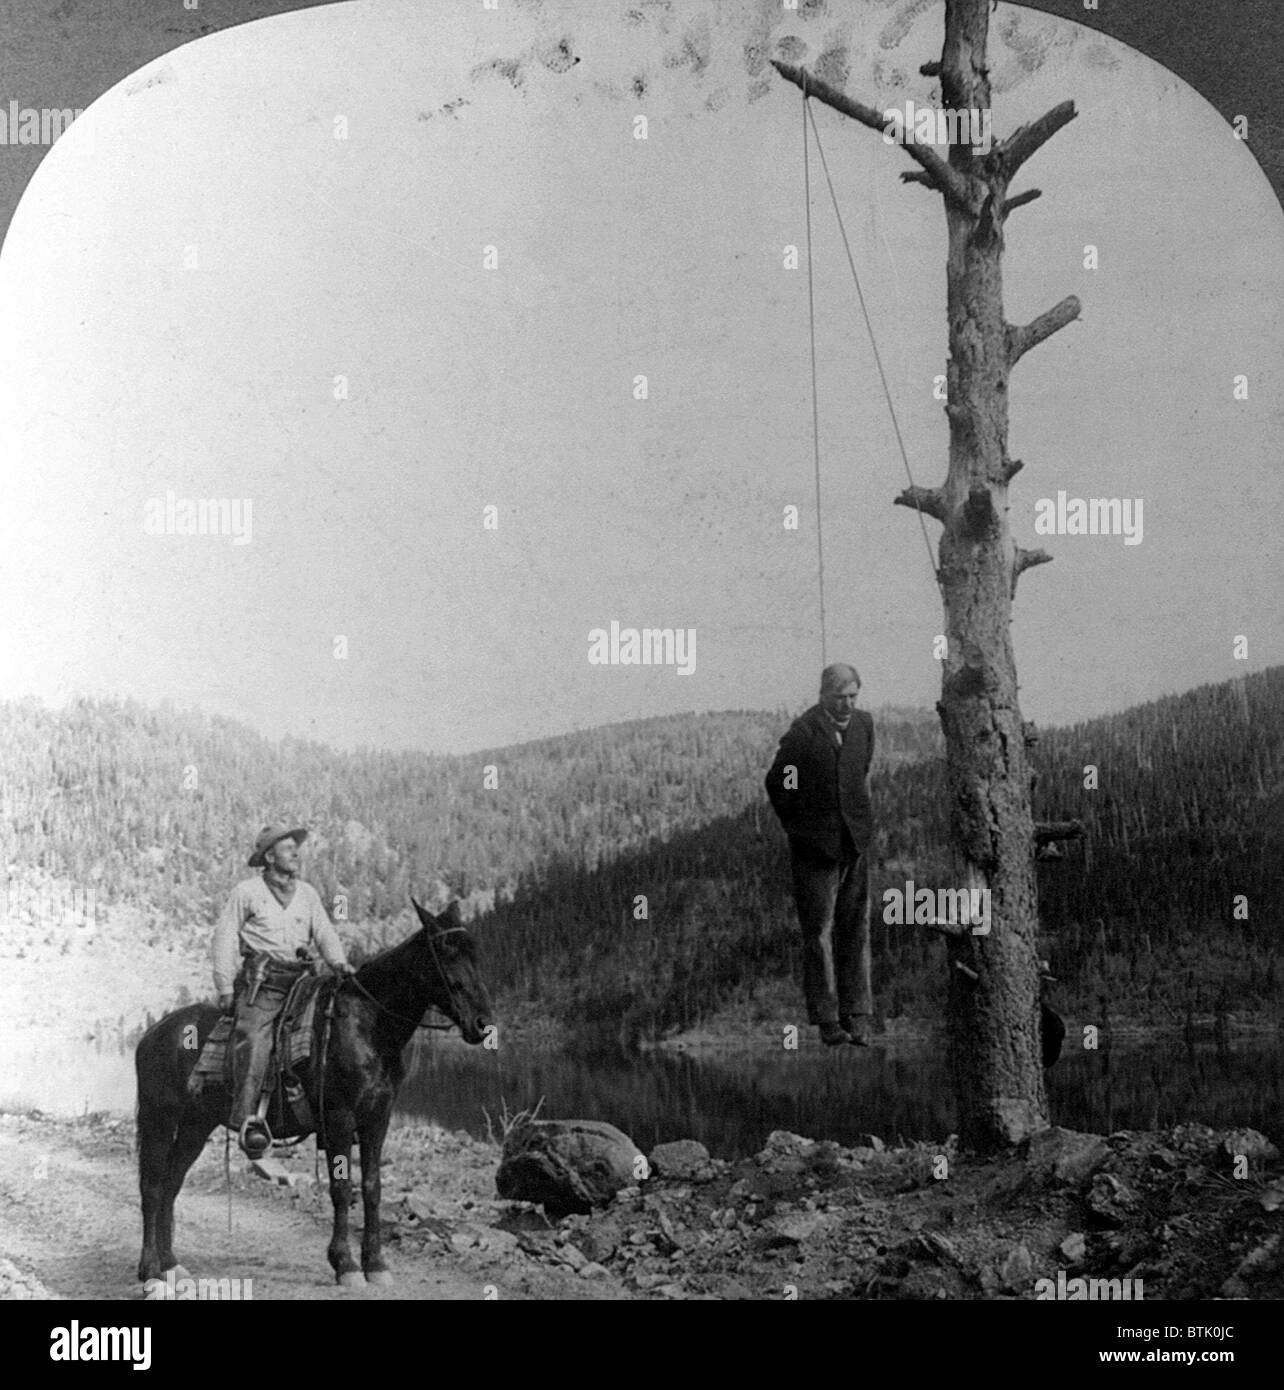 Wilden Westen. Sheriff auf Reiten mit Blick auf Bühne Trainer Räuber am seidenen Hals vom Baum, 1911. Stockfoto